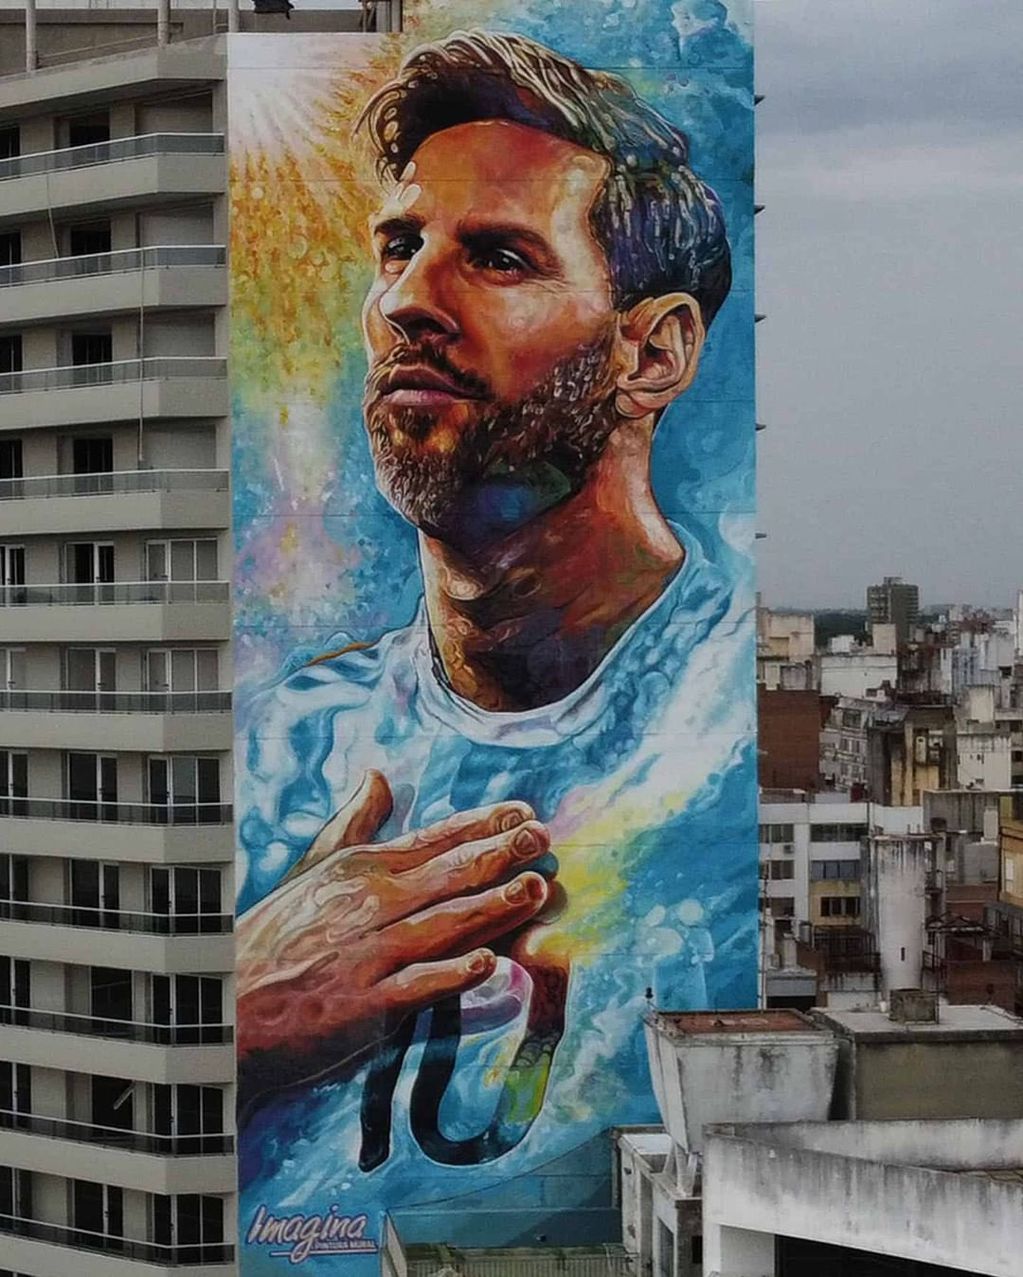 Este lunes inauguraron en Rosario un mural de 69 metros en homenaje a Messi (@@verobrunati).